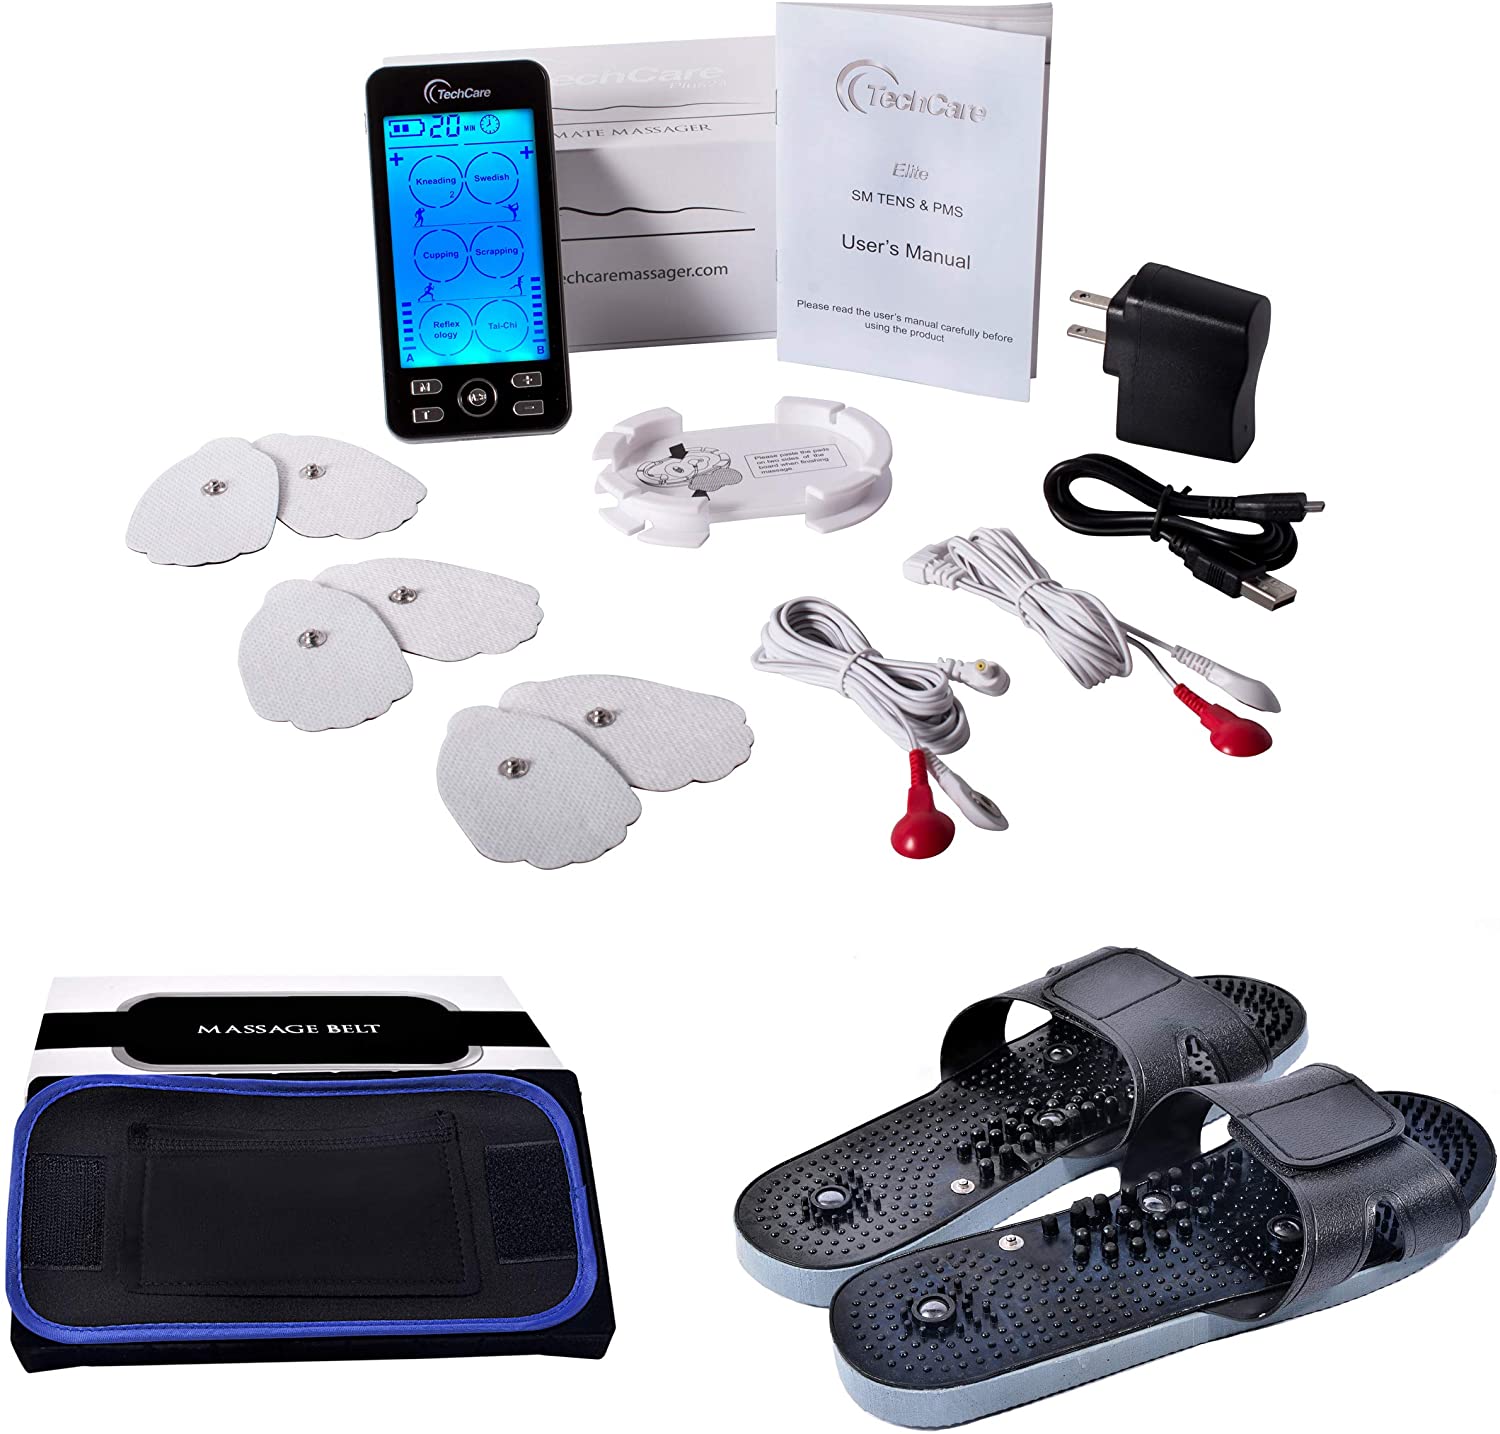 TechCare Massager SE - Portable TENS Unit 9 Modes